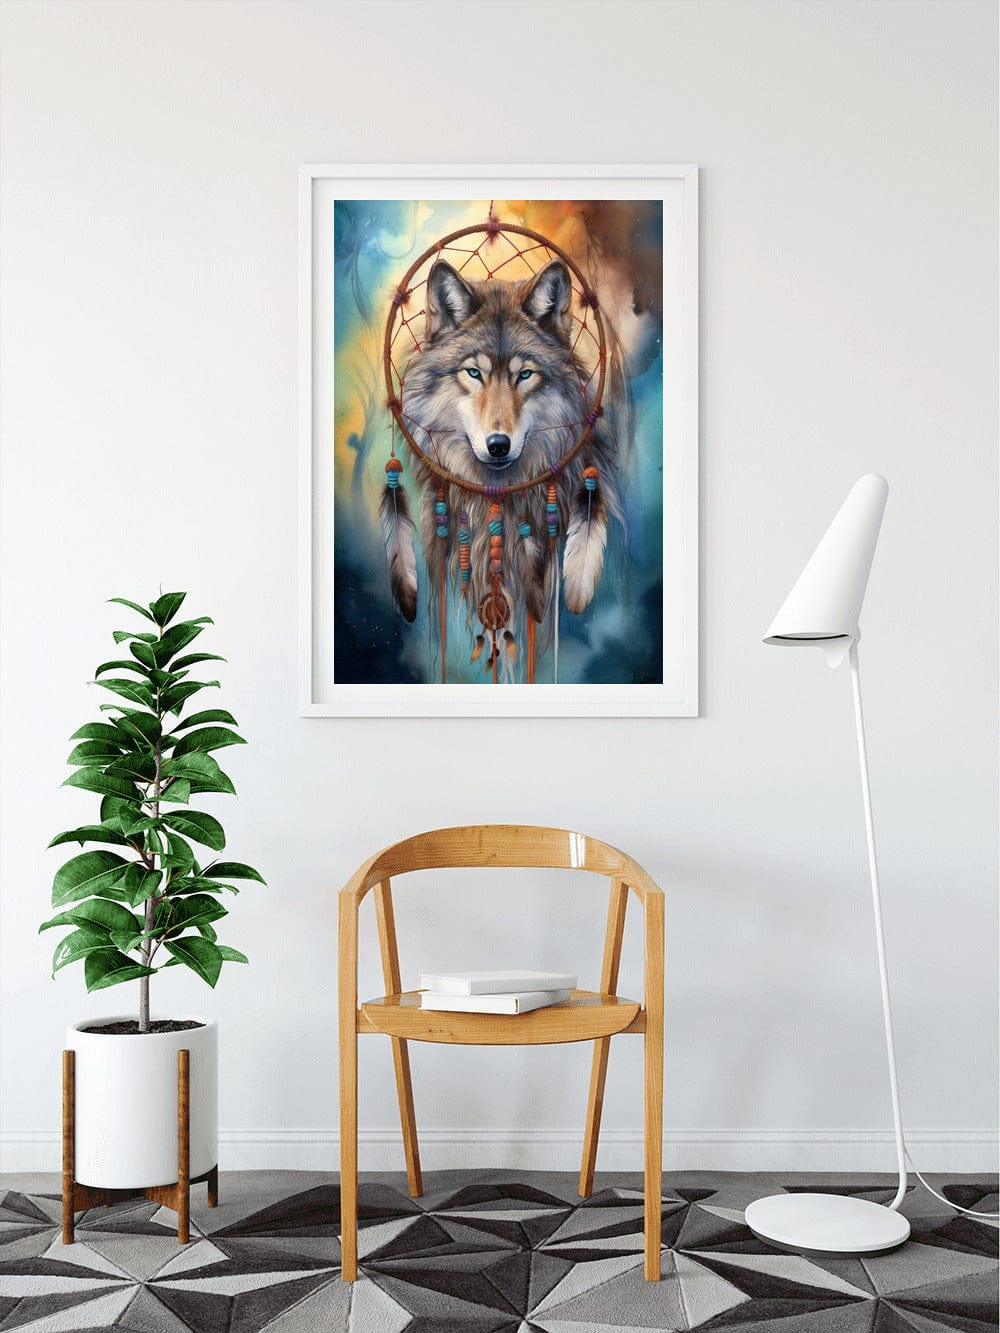 Diamond Painting - Mystischer Wolf, Traumfänger